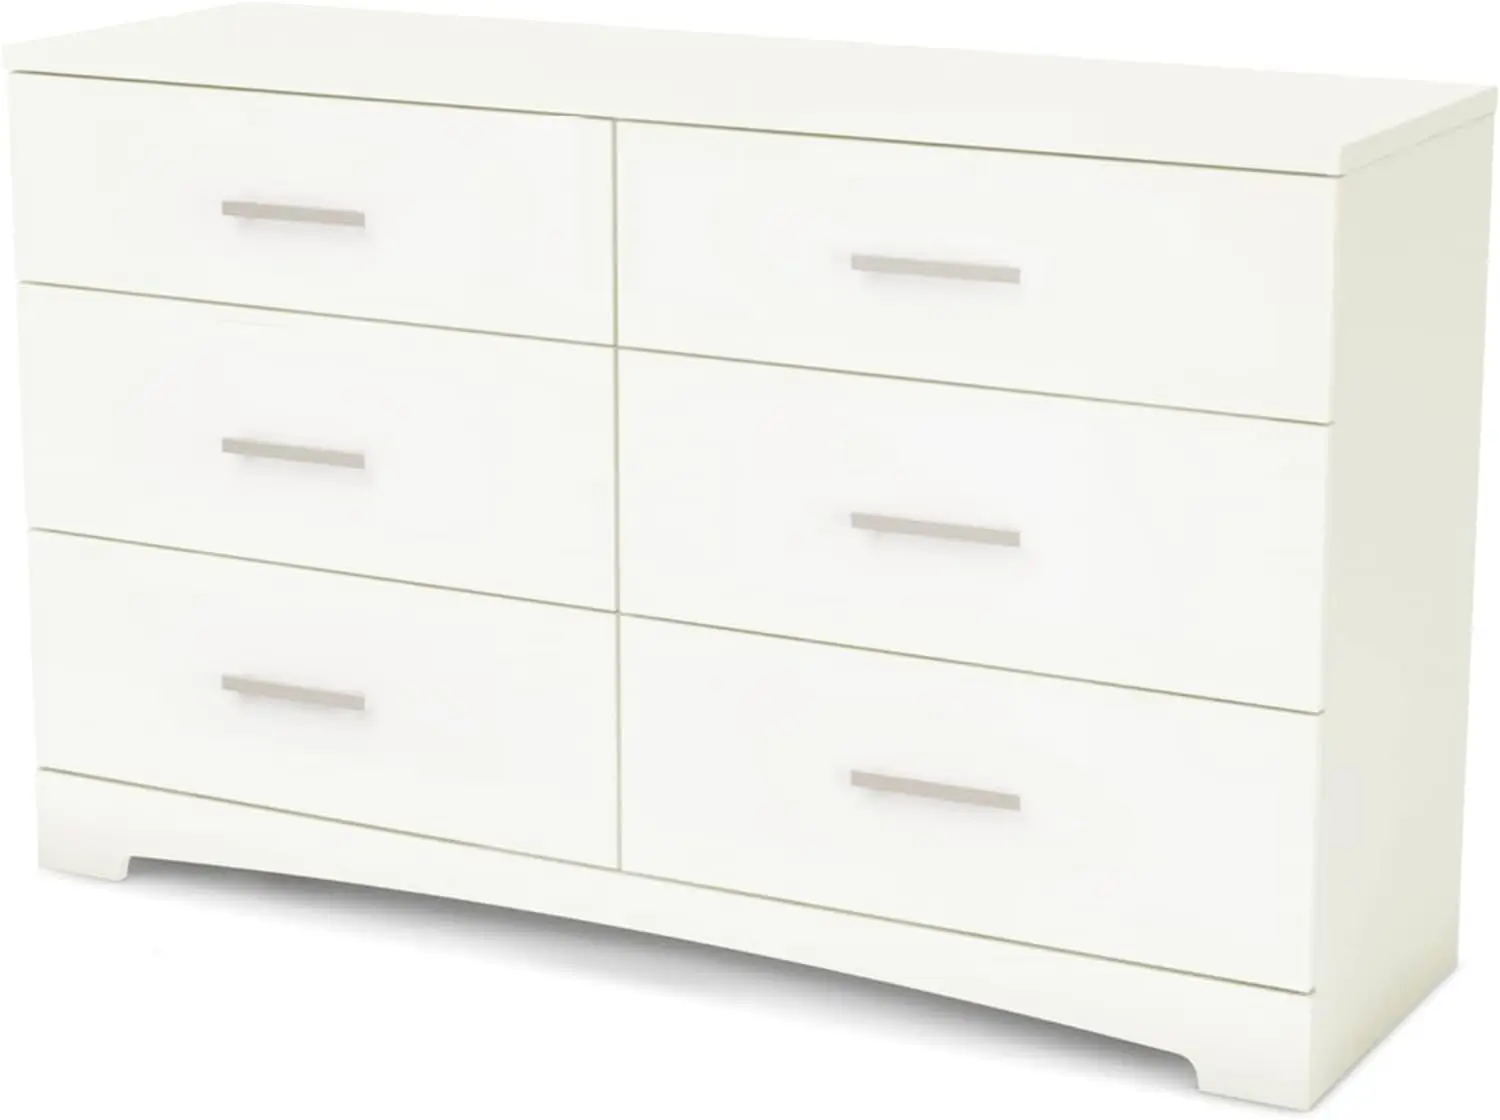 

6-Drawer Double Dresser, Pure White Esquinero de madera para sala Closet organizer Make up organizer Organizadores para habitaci